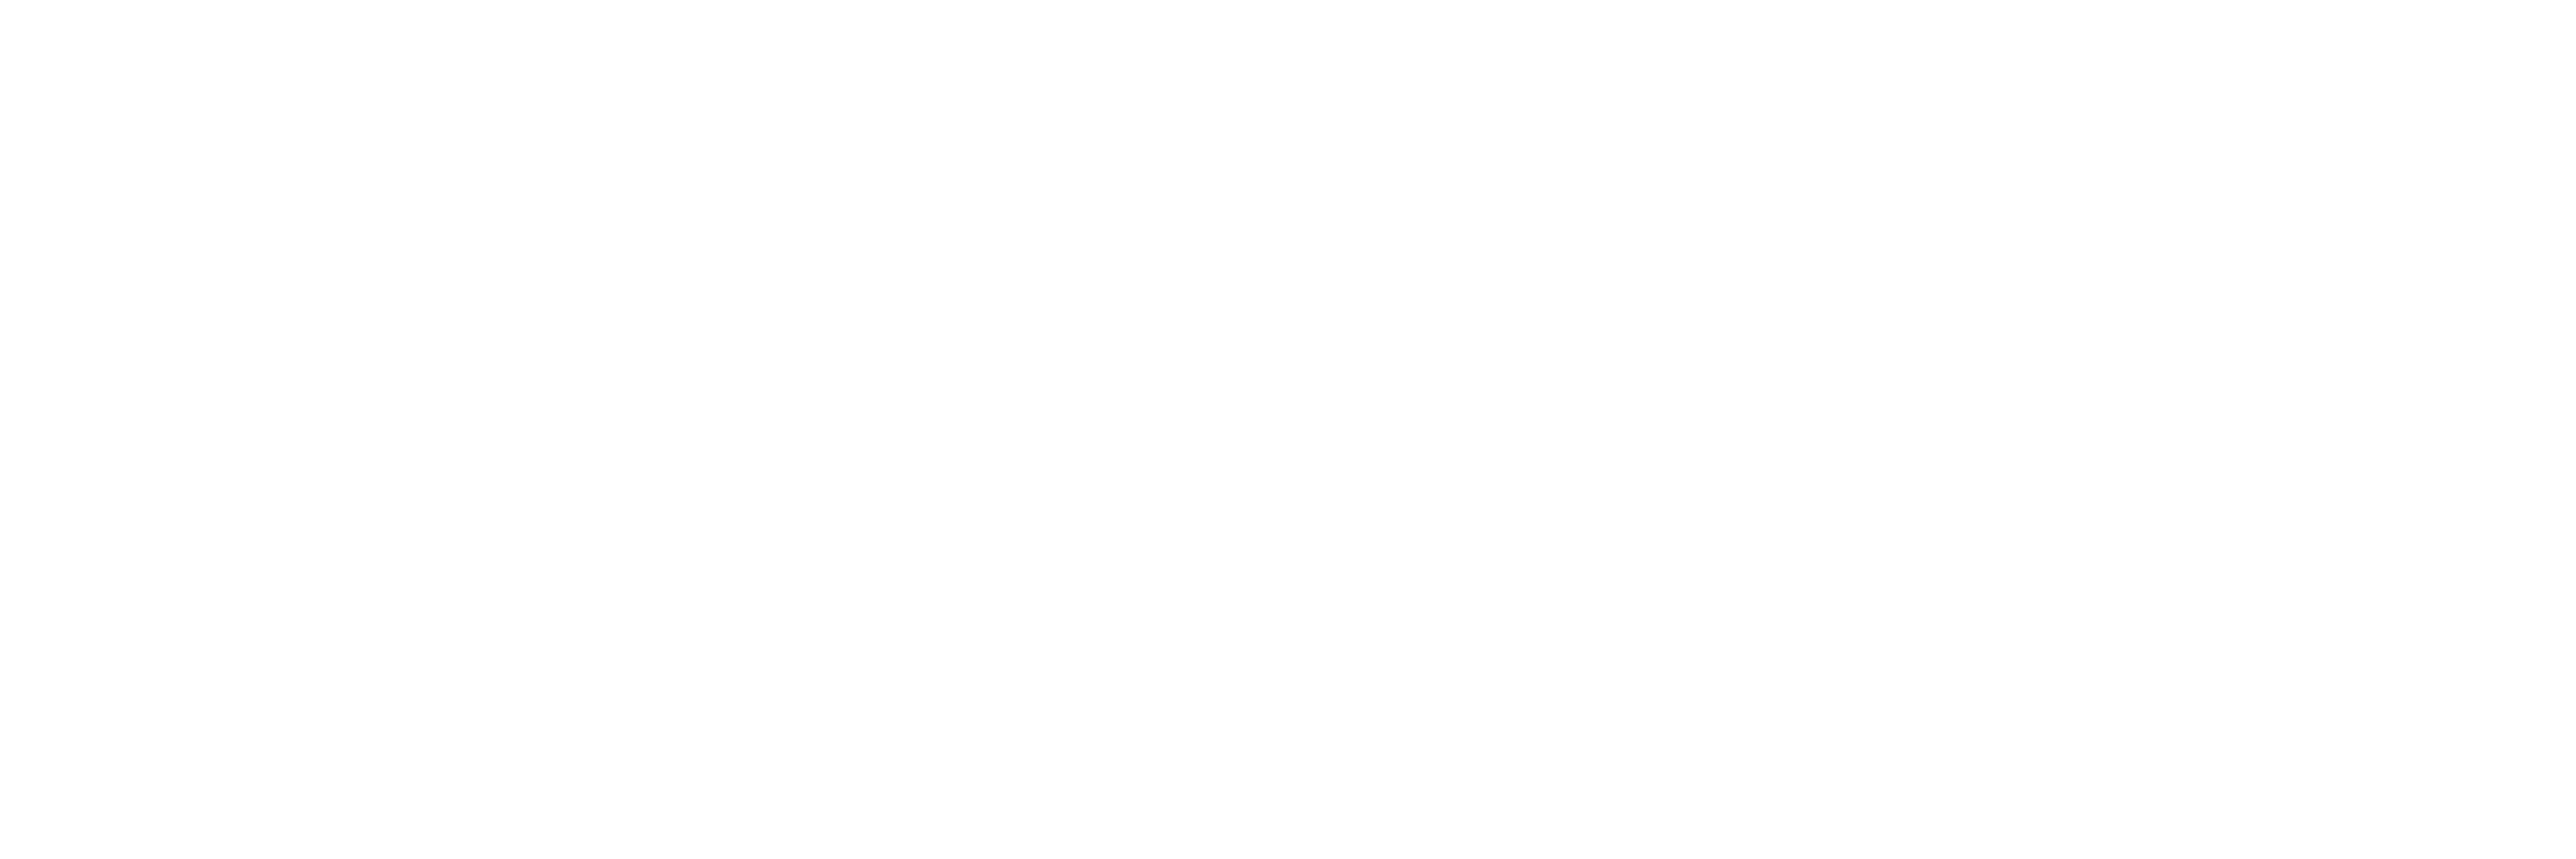 Varberg Walkabout